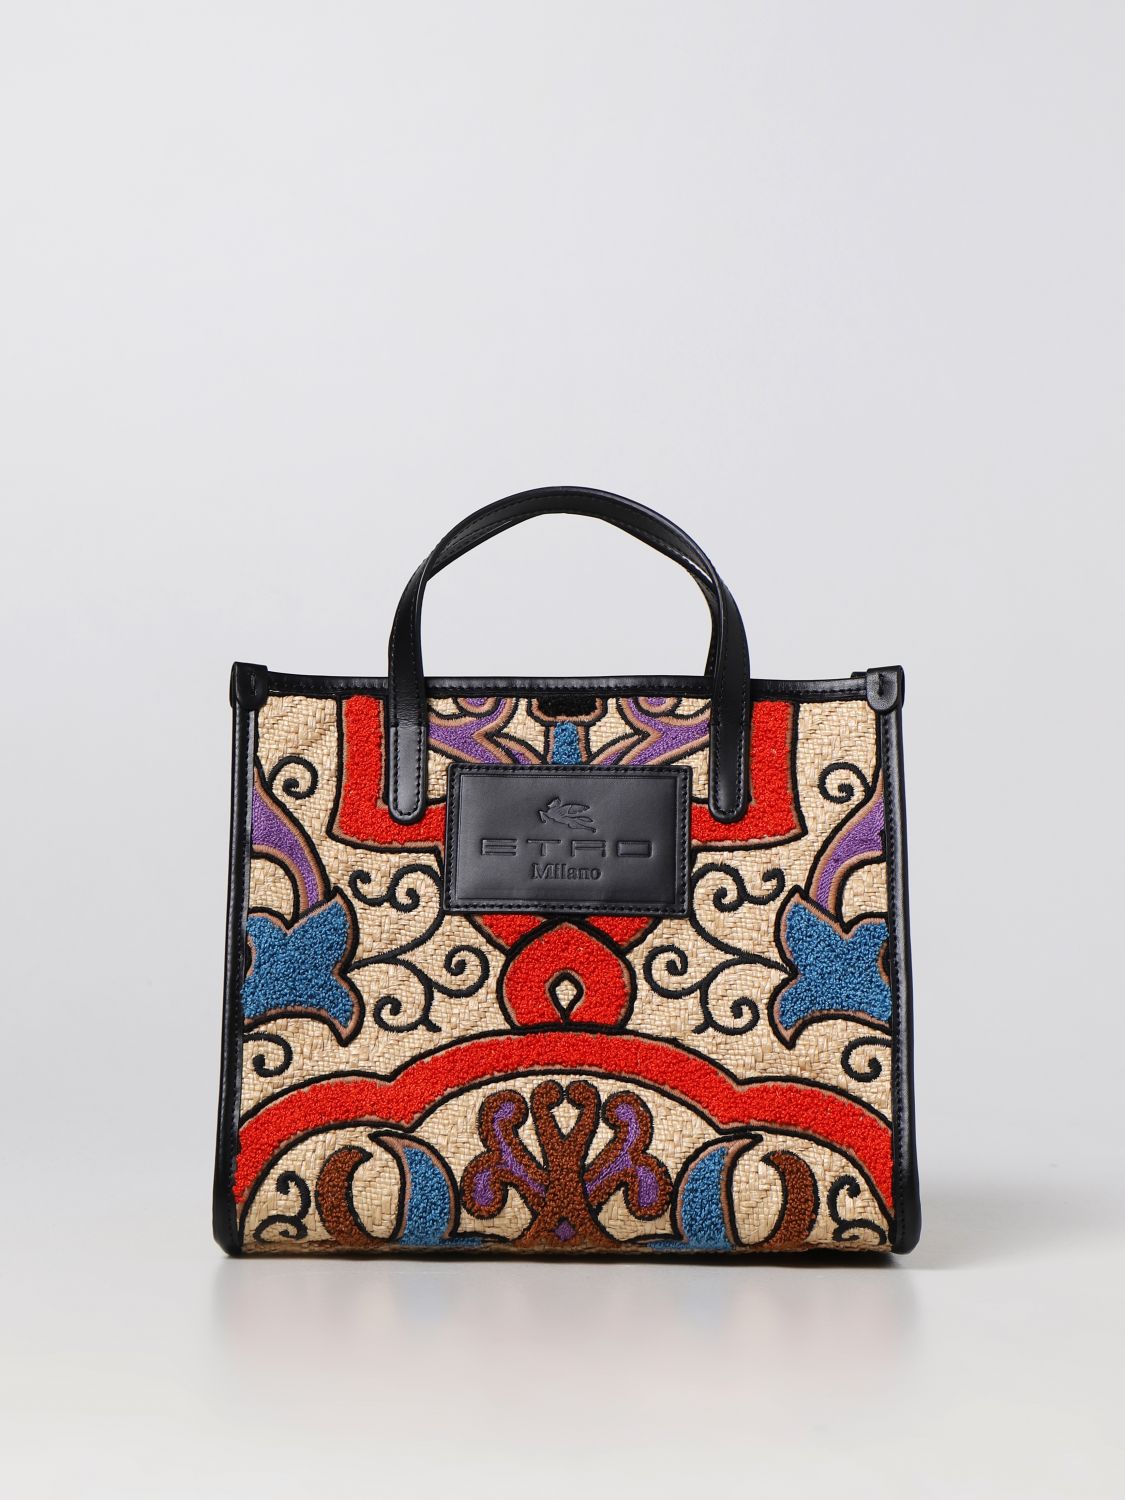 Etro - Tote bag for Woman - Multicolor - 1P0487111-0800